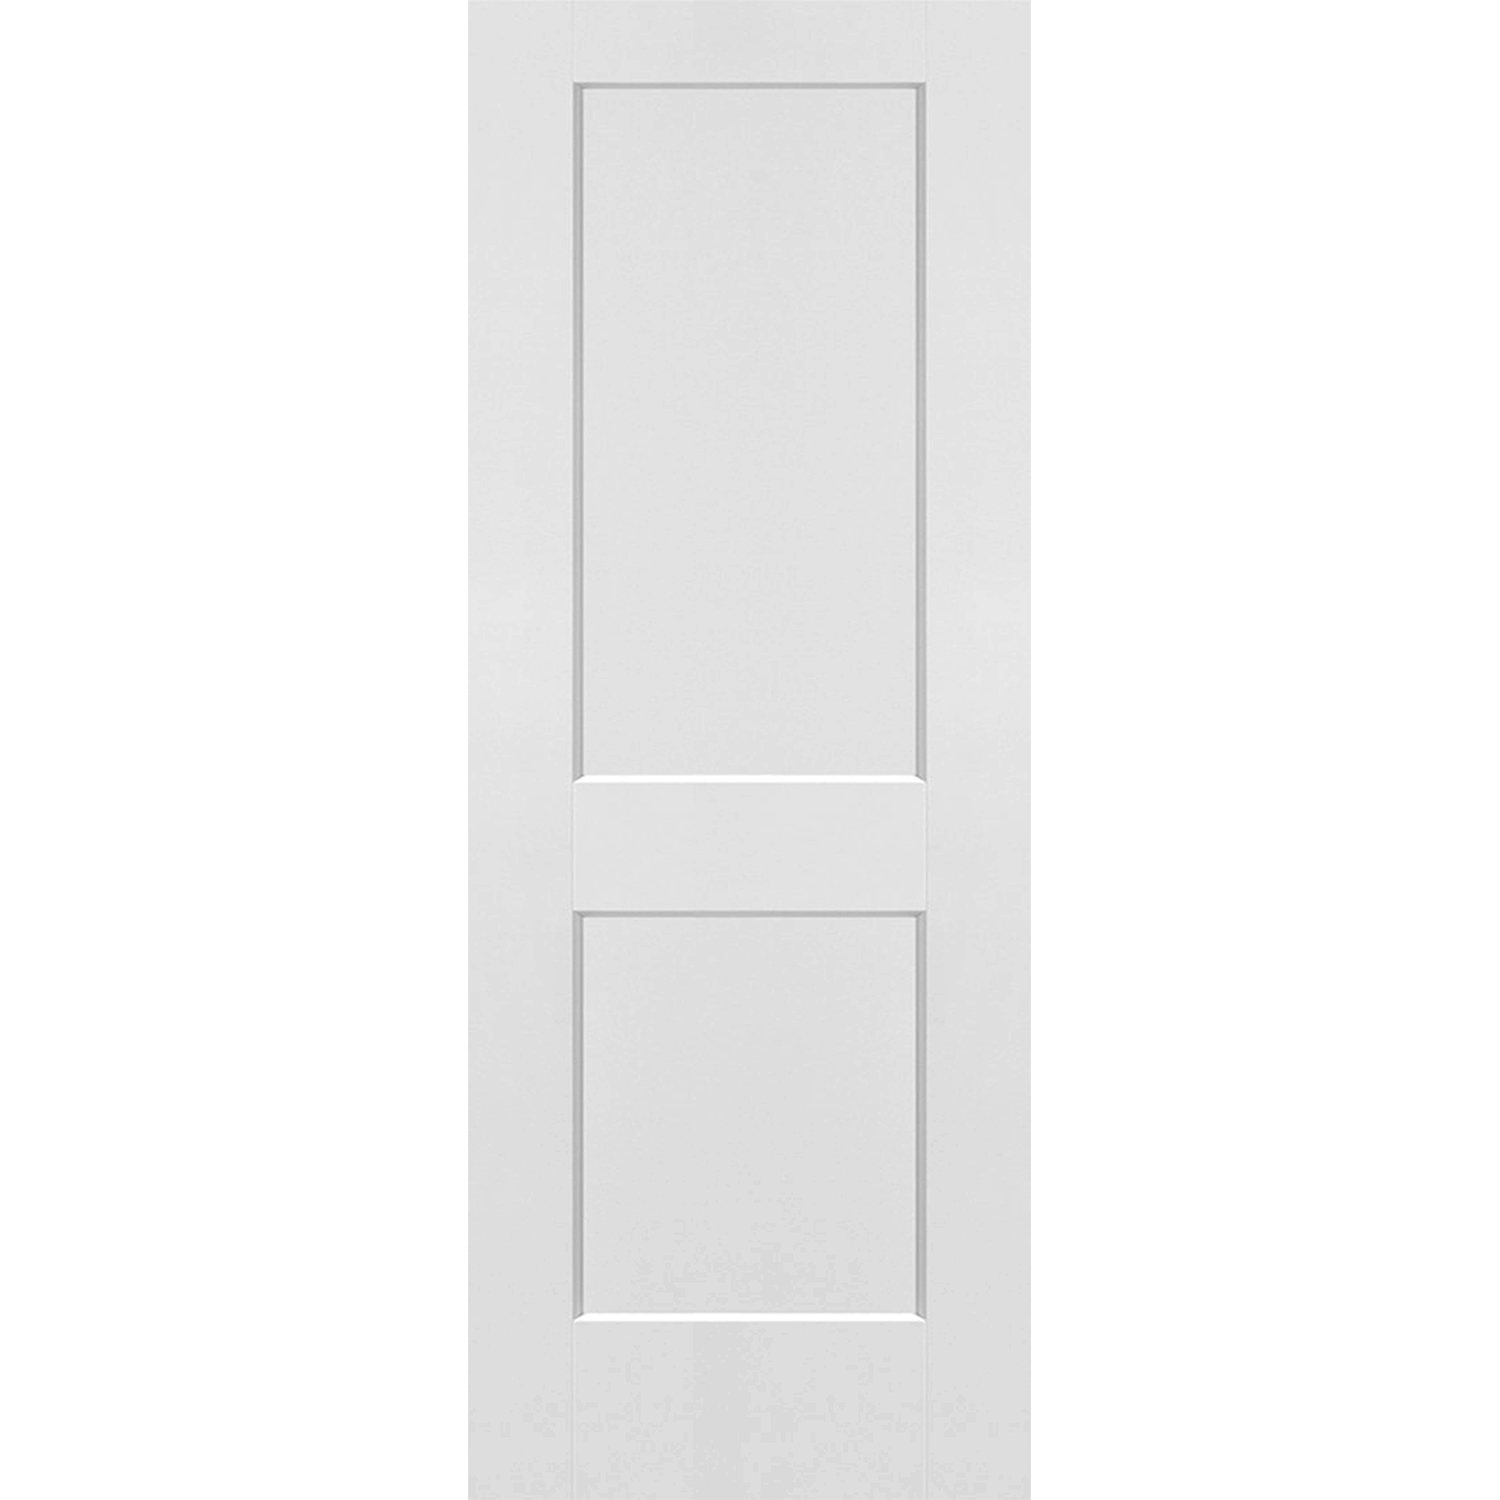 2 Panel Solid Door - 30 x 80